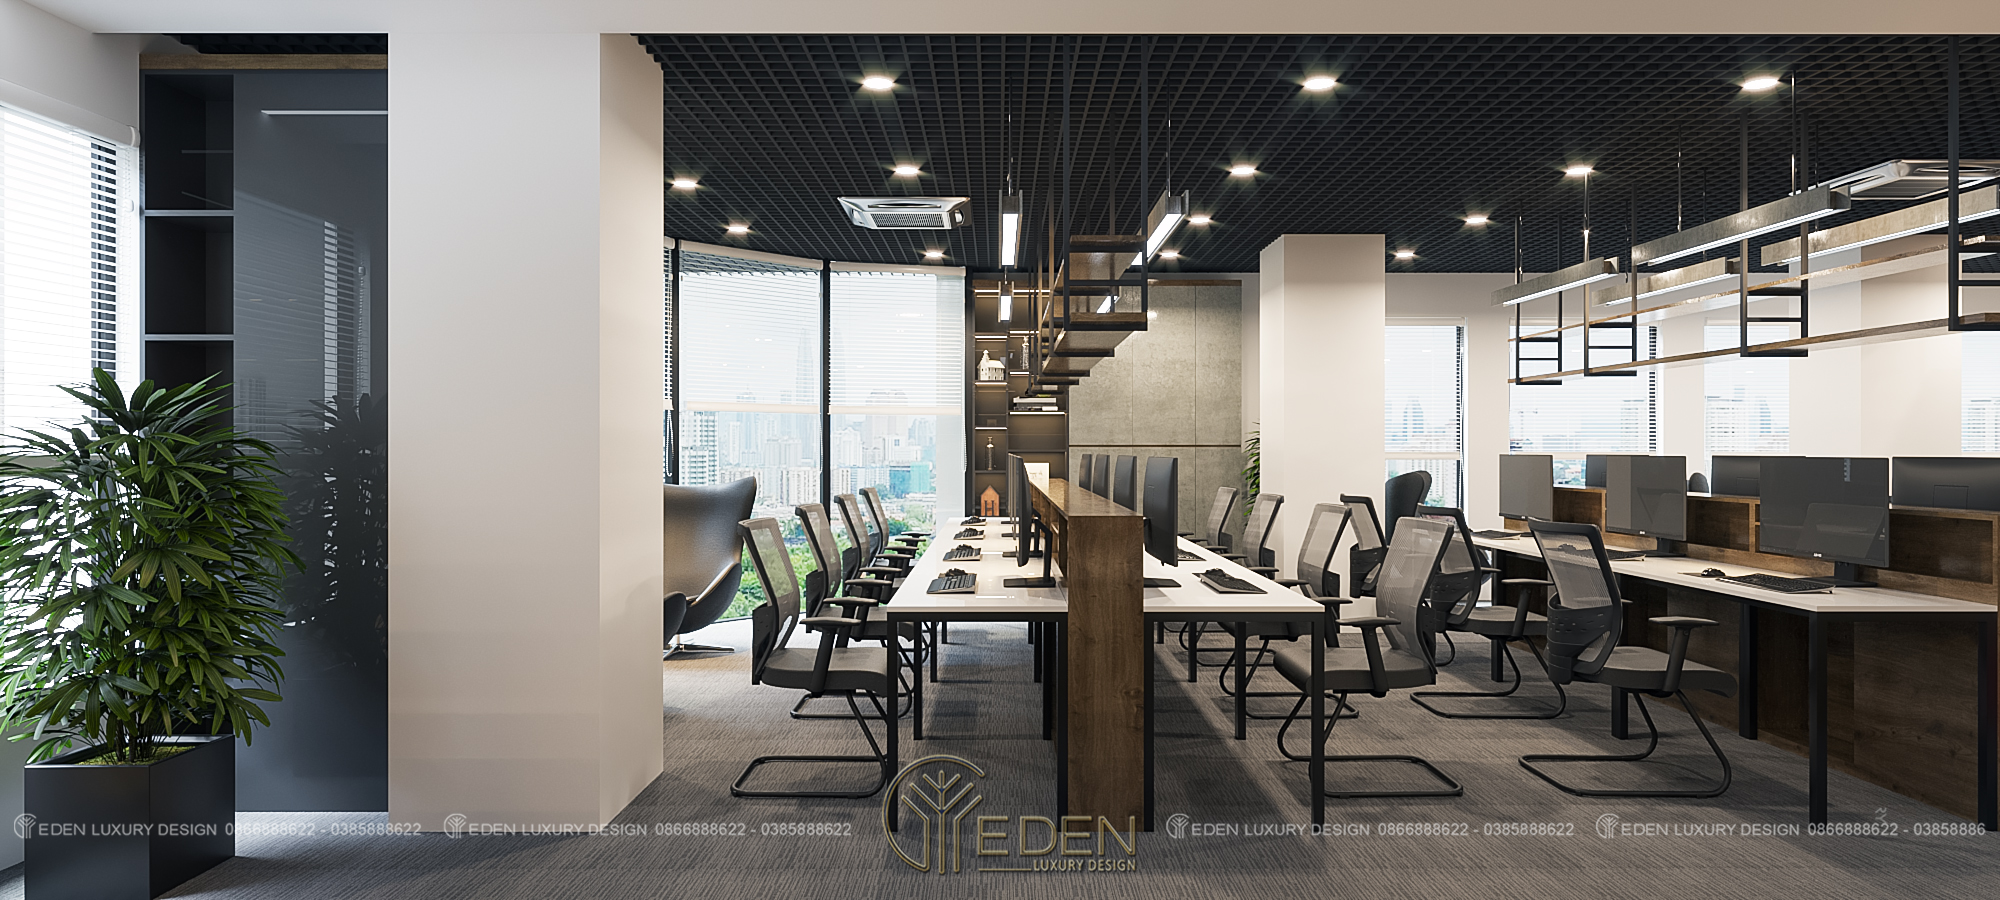 Khu vực làm việc của nhân viên được thiết kế hiện đại, tiện nghi, không gian mở với vách kính mang lại cảm giác cực chill khi làm việc.